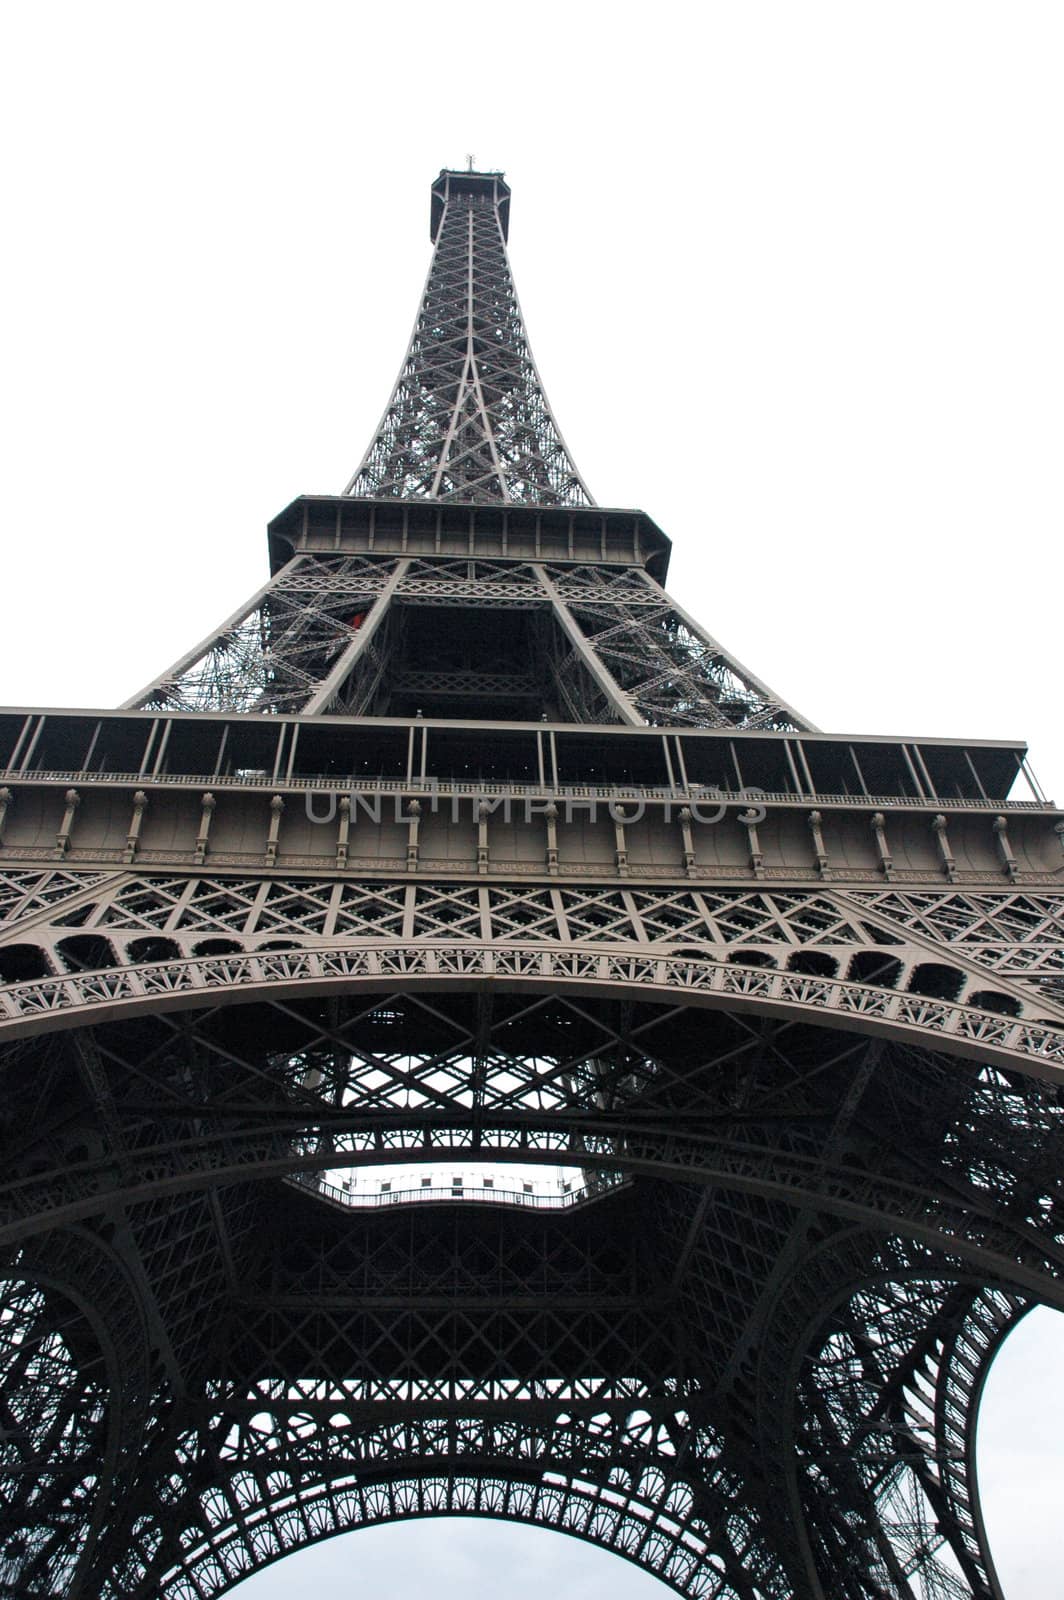 Eiffel Tower by tony4urban